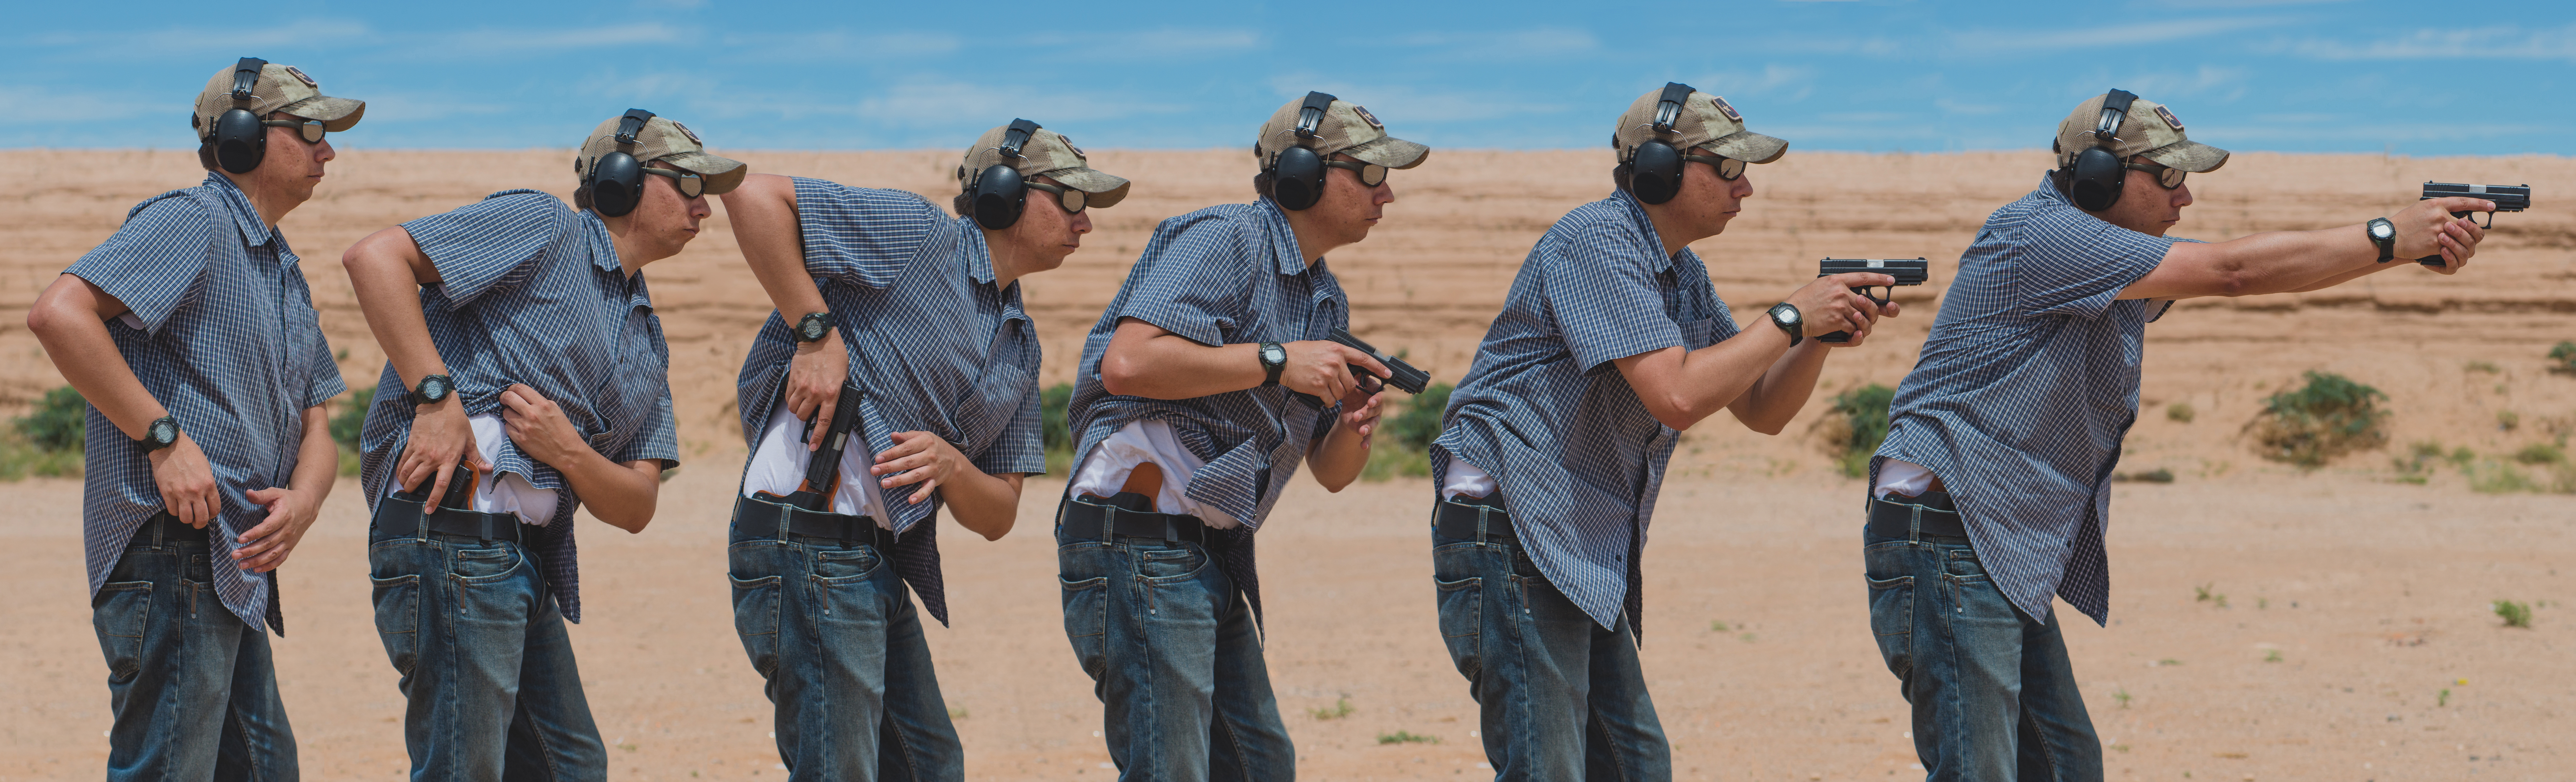 Contact Red Dot Firearms | Shooting Range Layton Utah